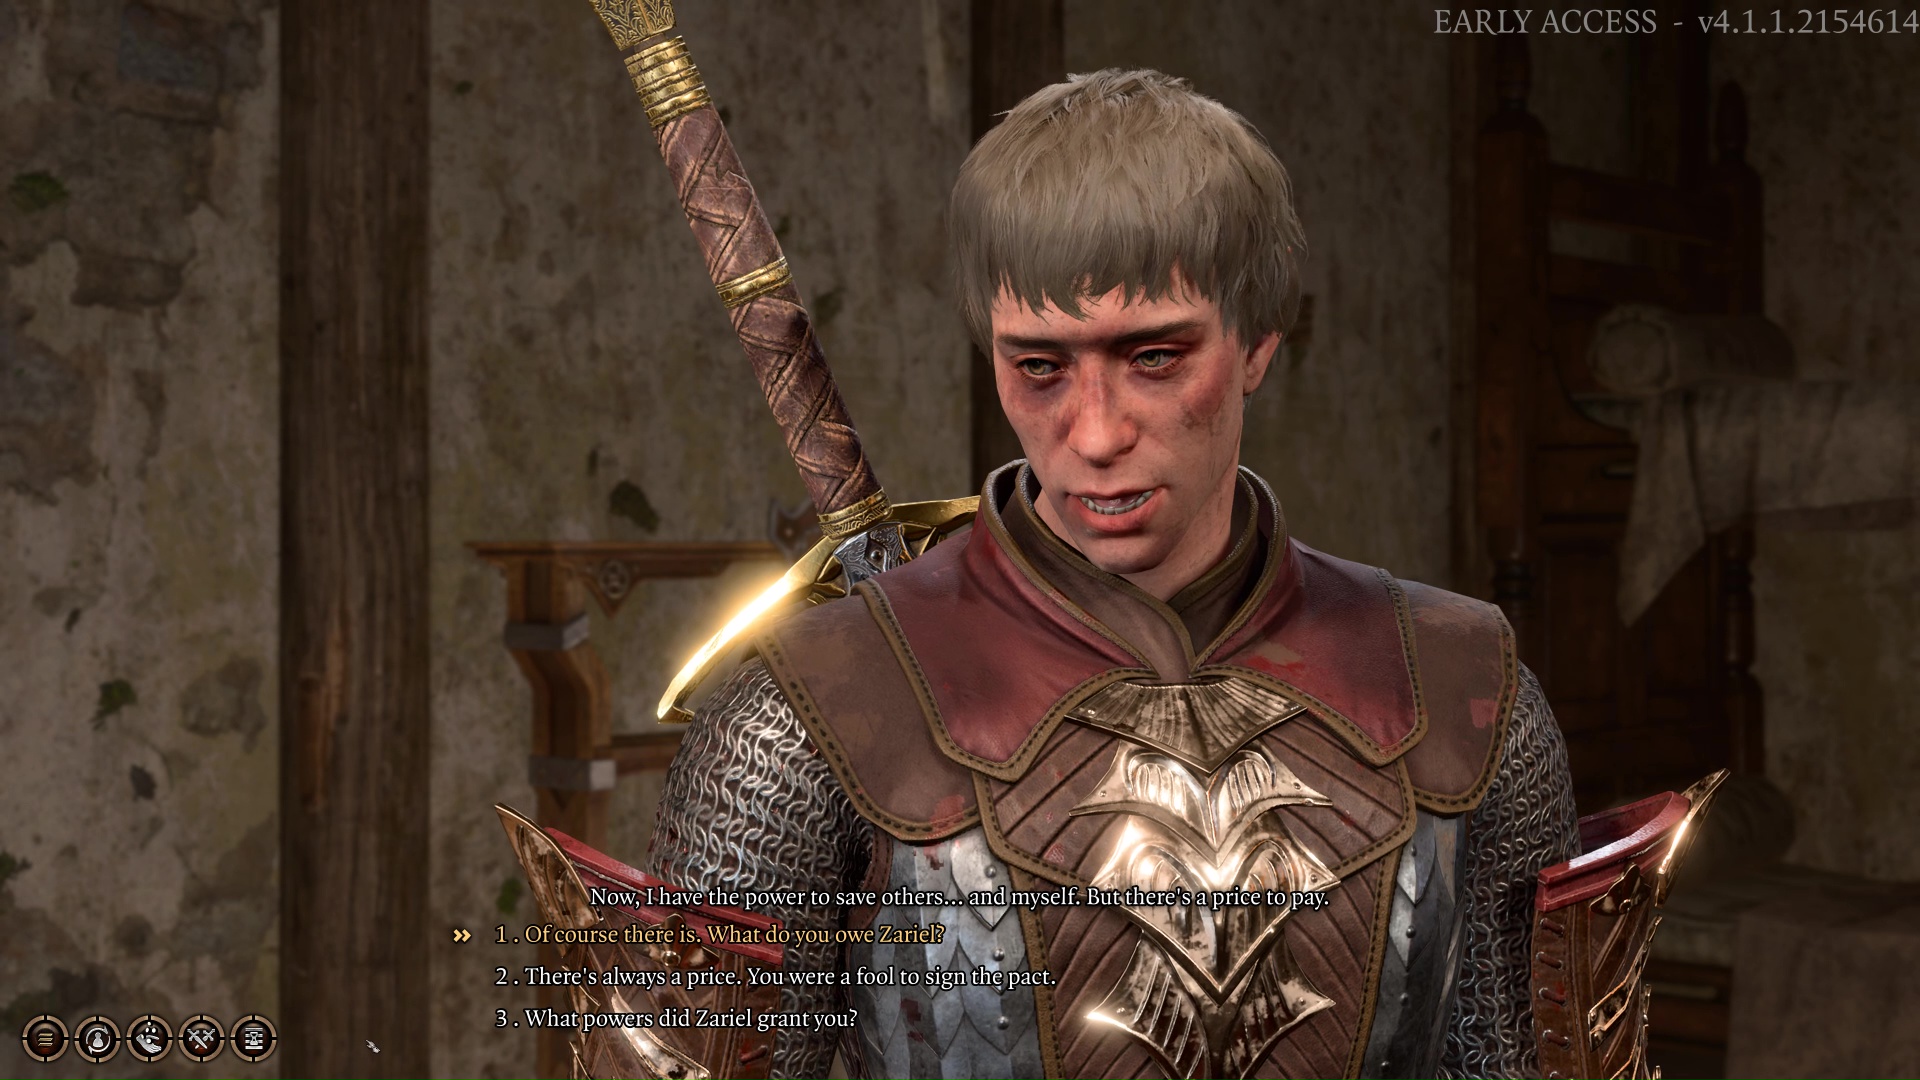 Dialogi Andersin kanssa Baldur's Gate 3:ssa